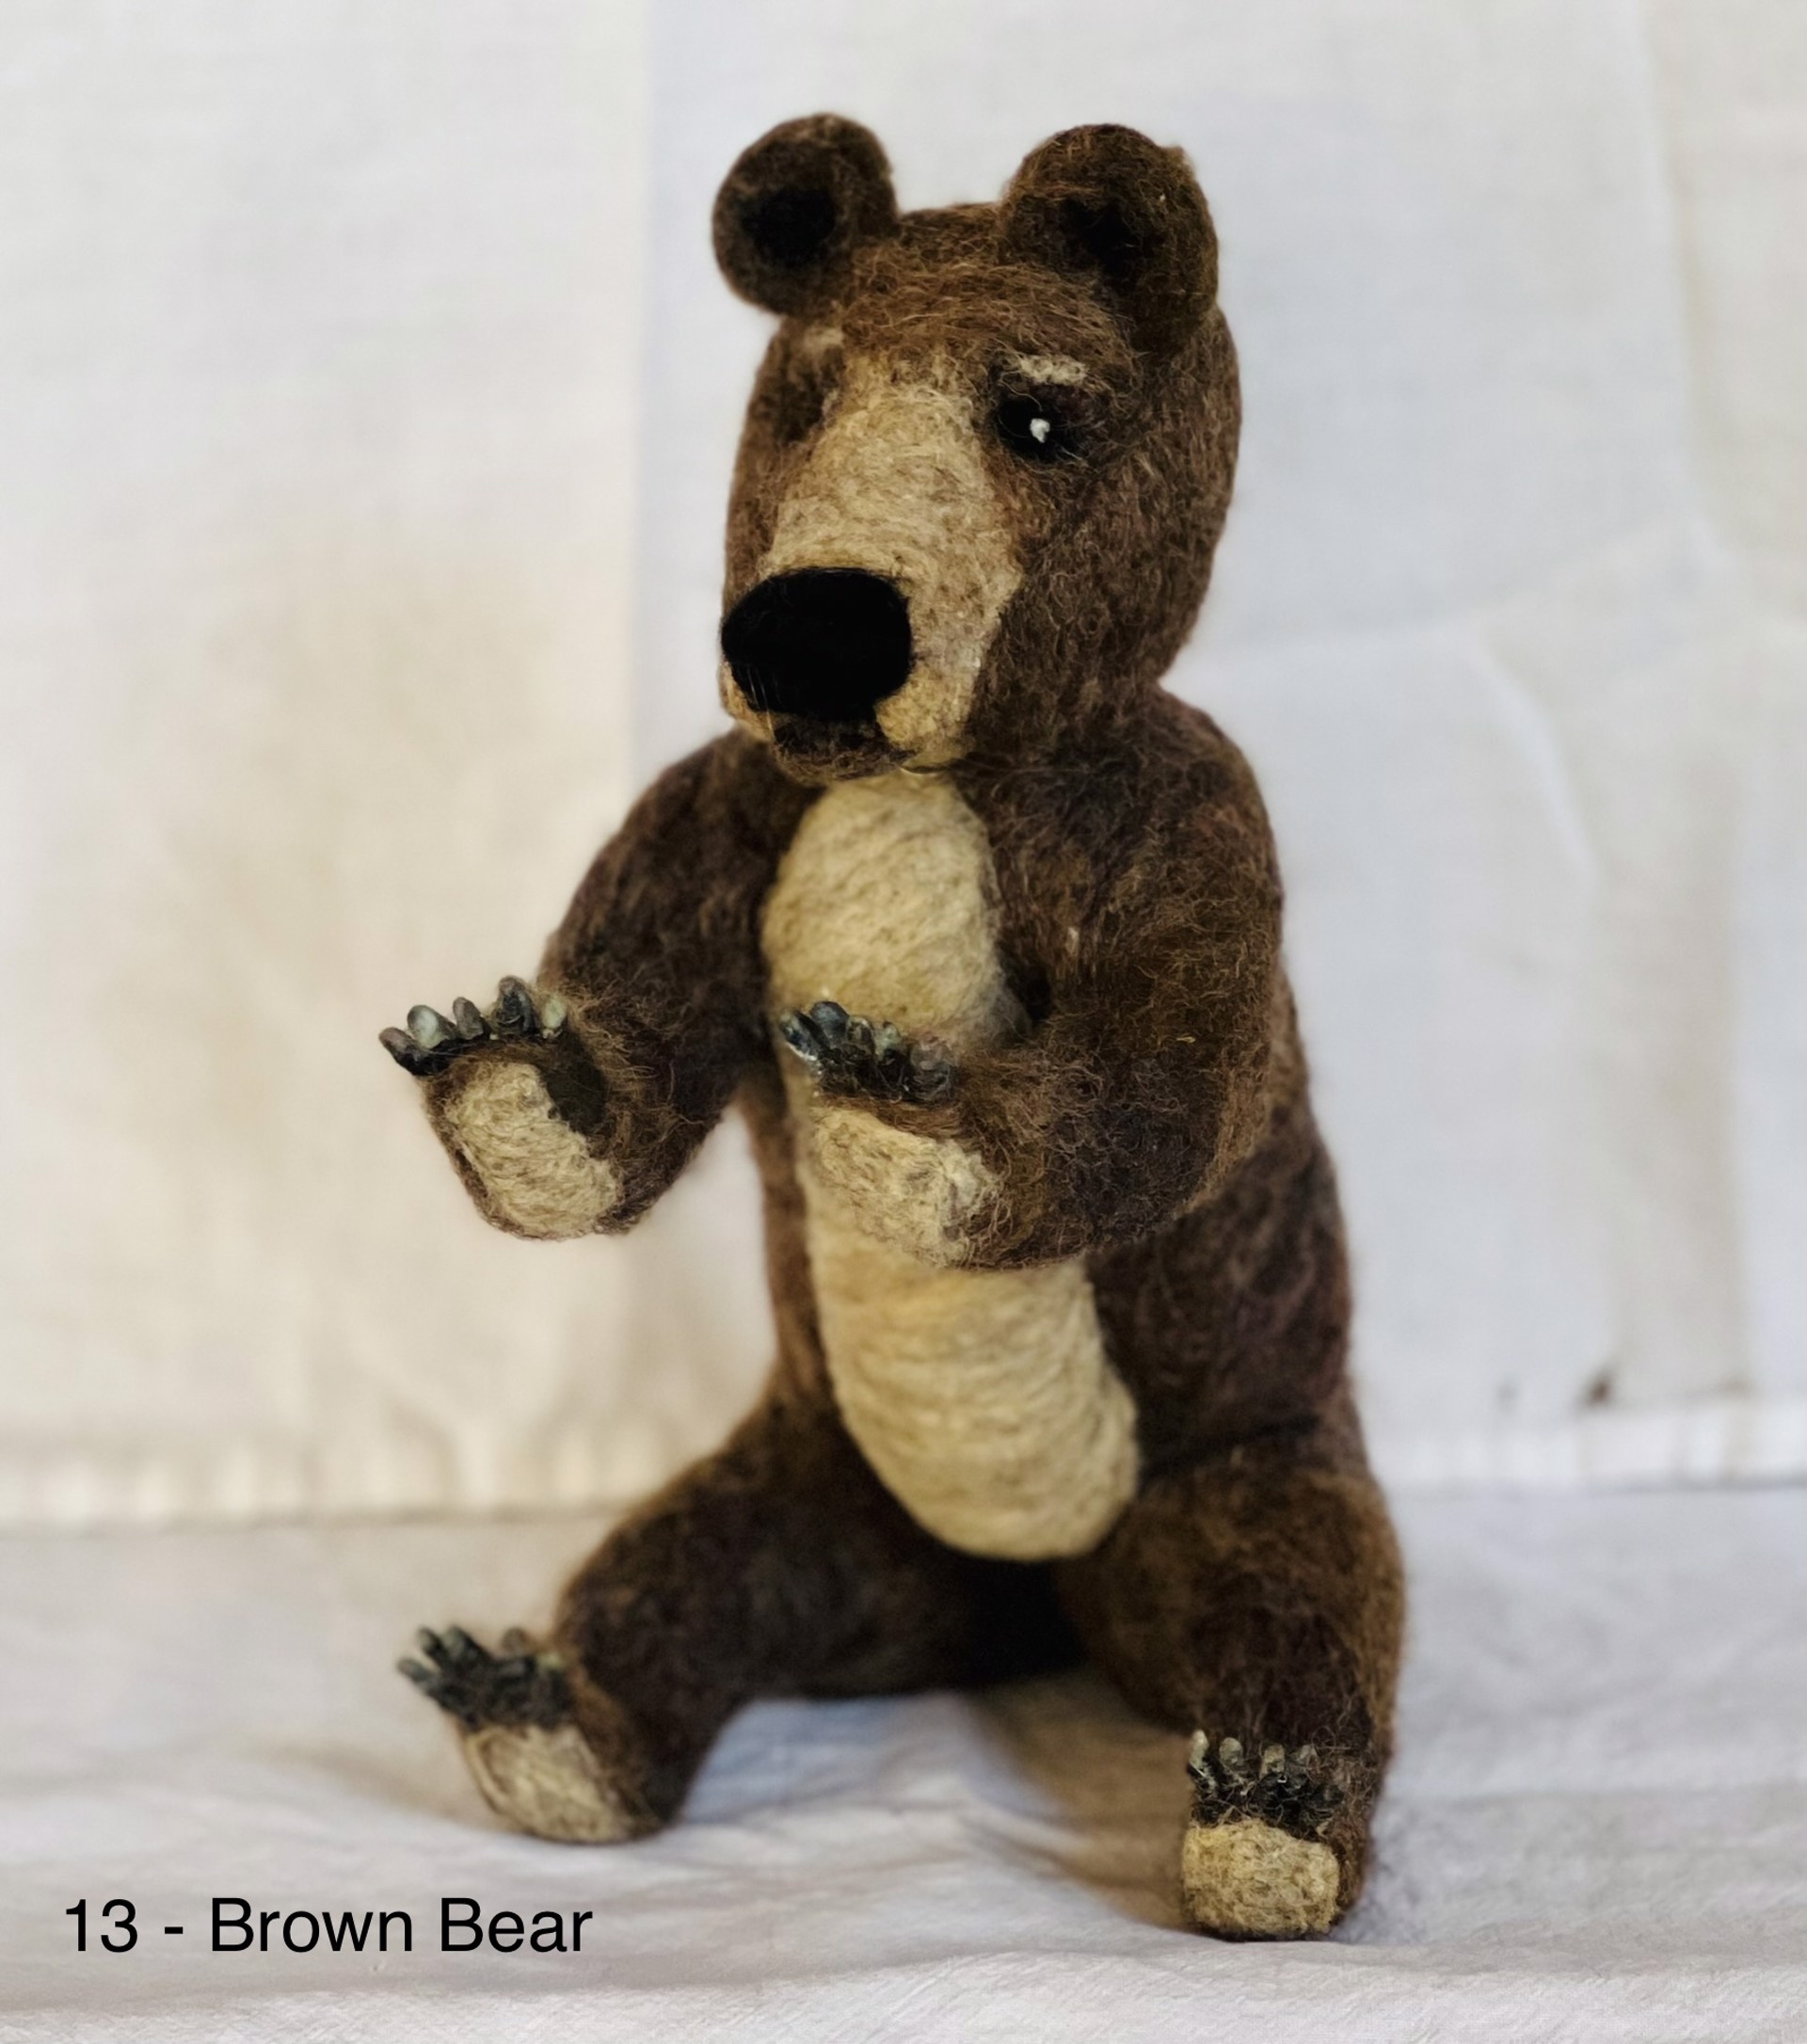 Brown Bear by Barb Ottum